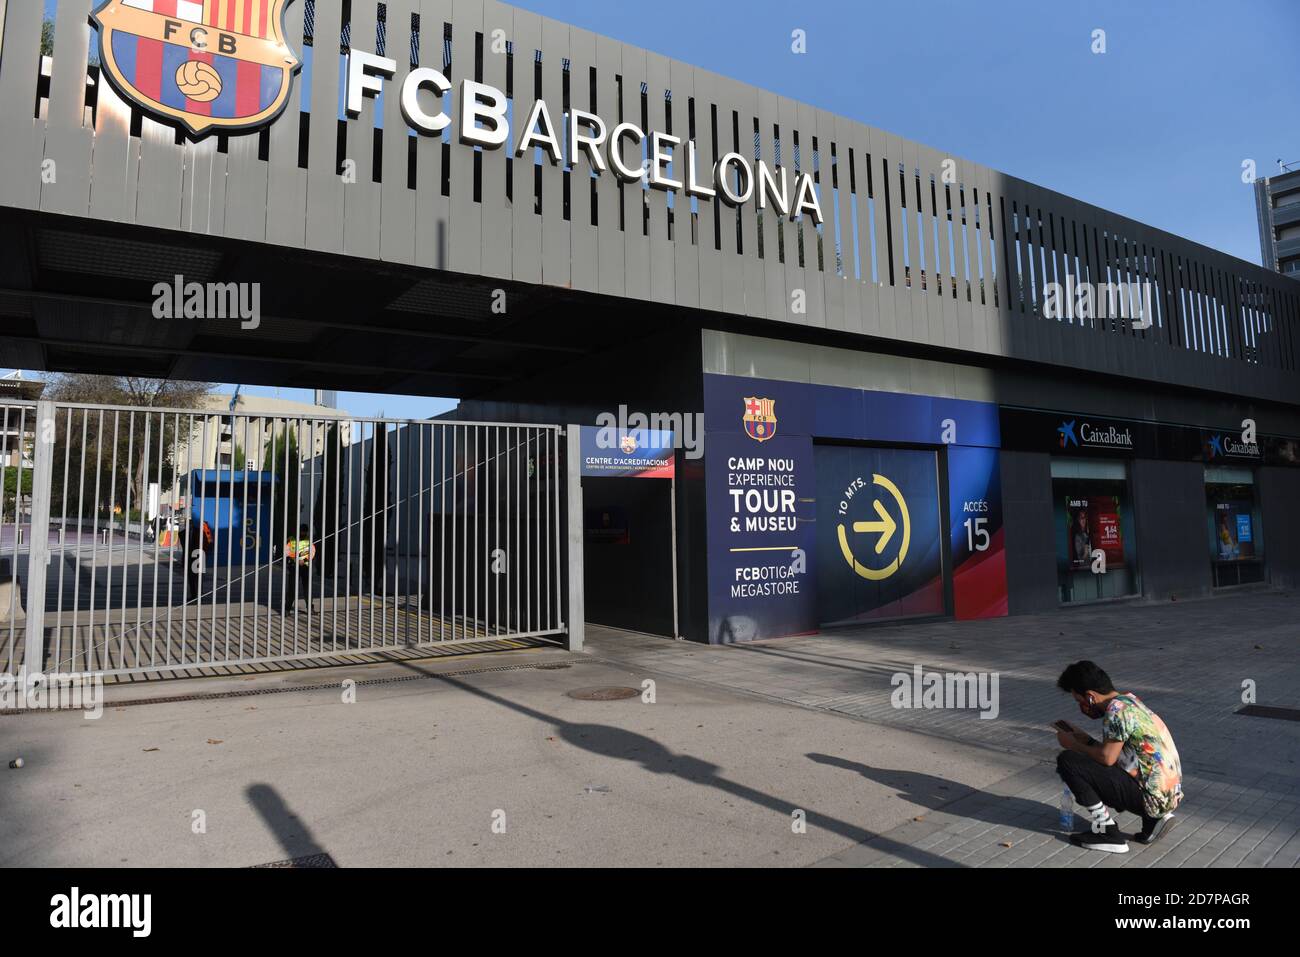 Portafotos del Futbol Club Barcelona rubber estadio